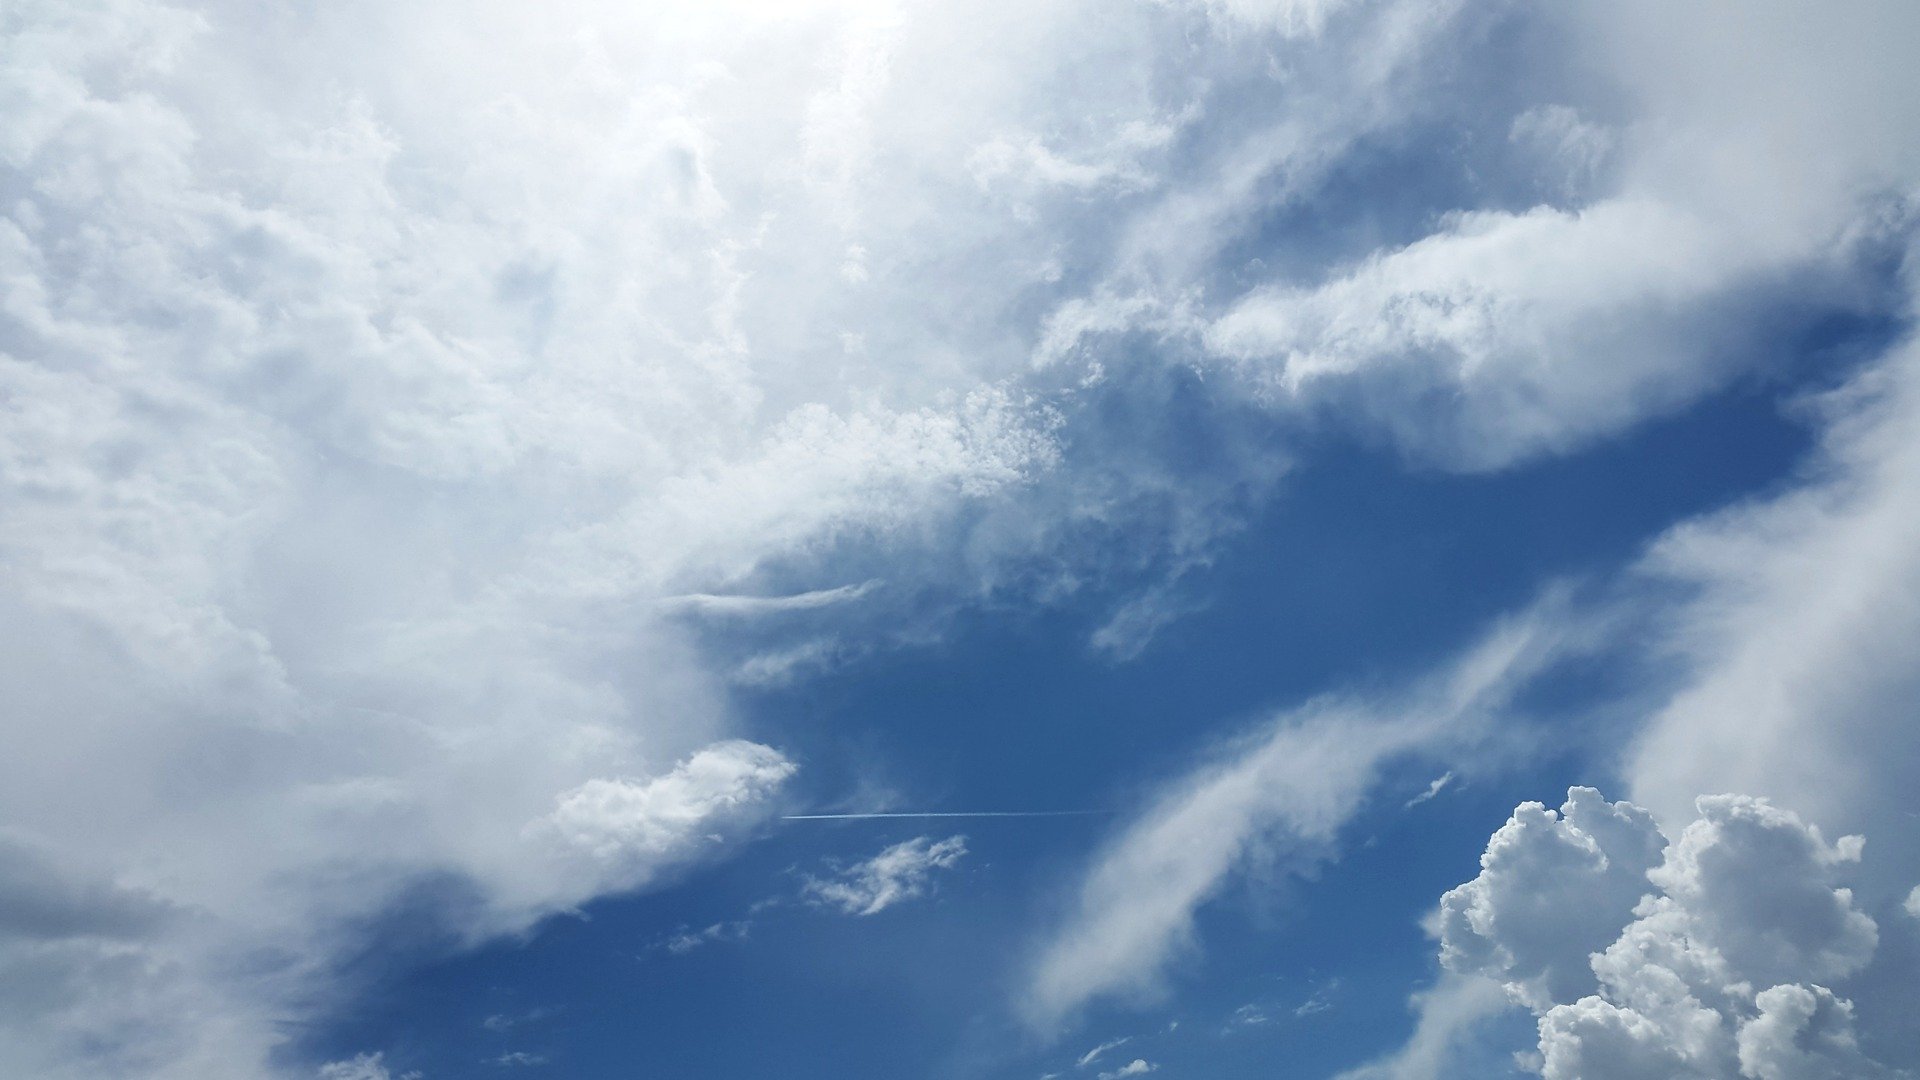 Smugi kondensacyjne i chmury. Wpływ działalności człowieka na atmosferę Ziemi - scenariusz dla nauczyciela